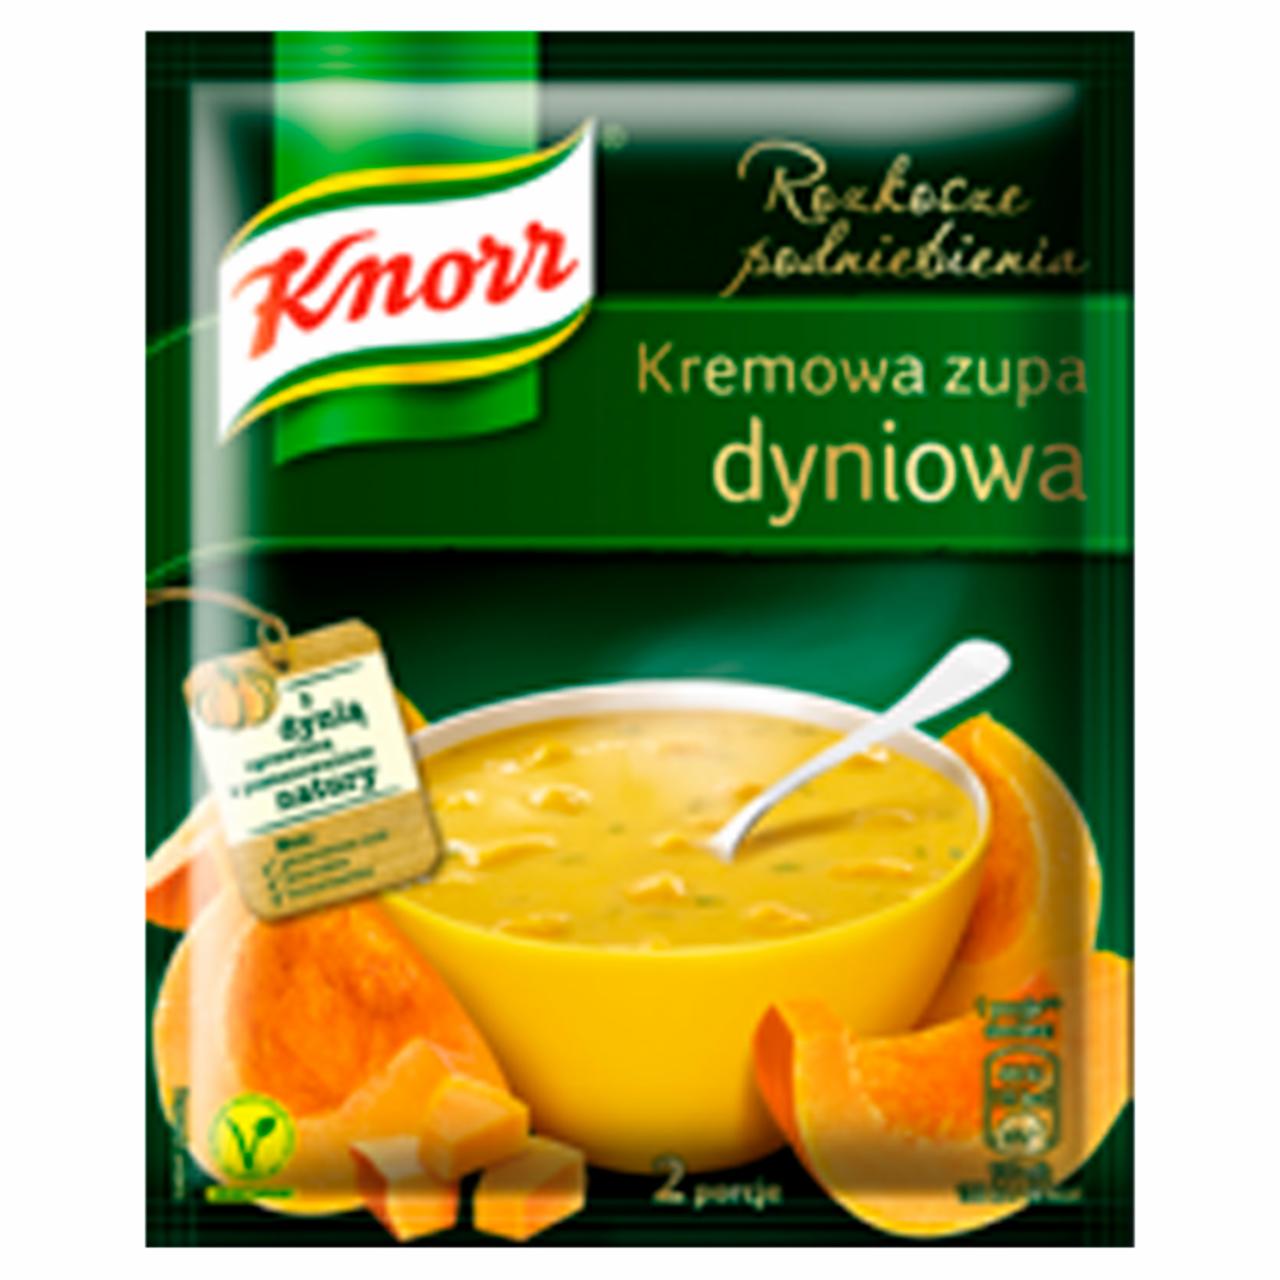 Zdjęcia - Knorr Rozkosze podniebienia Kremowa zupa dyniowa 52 g